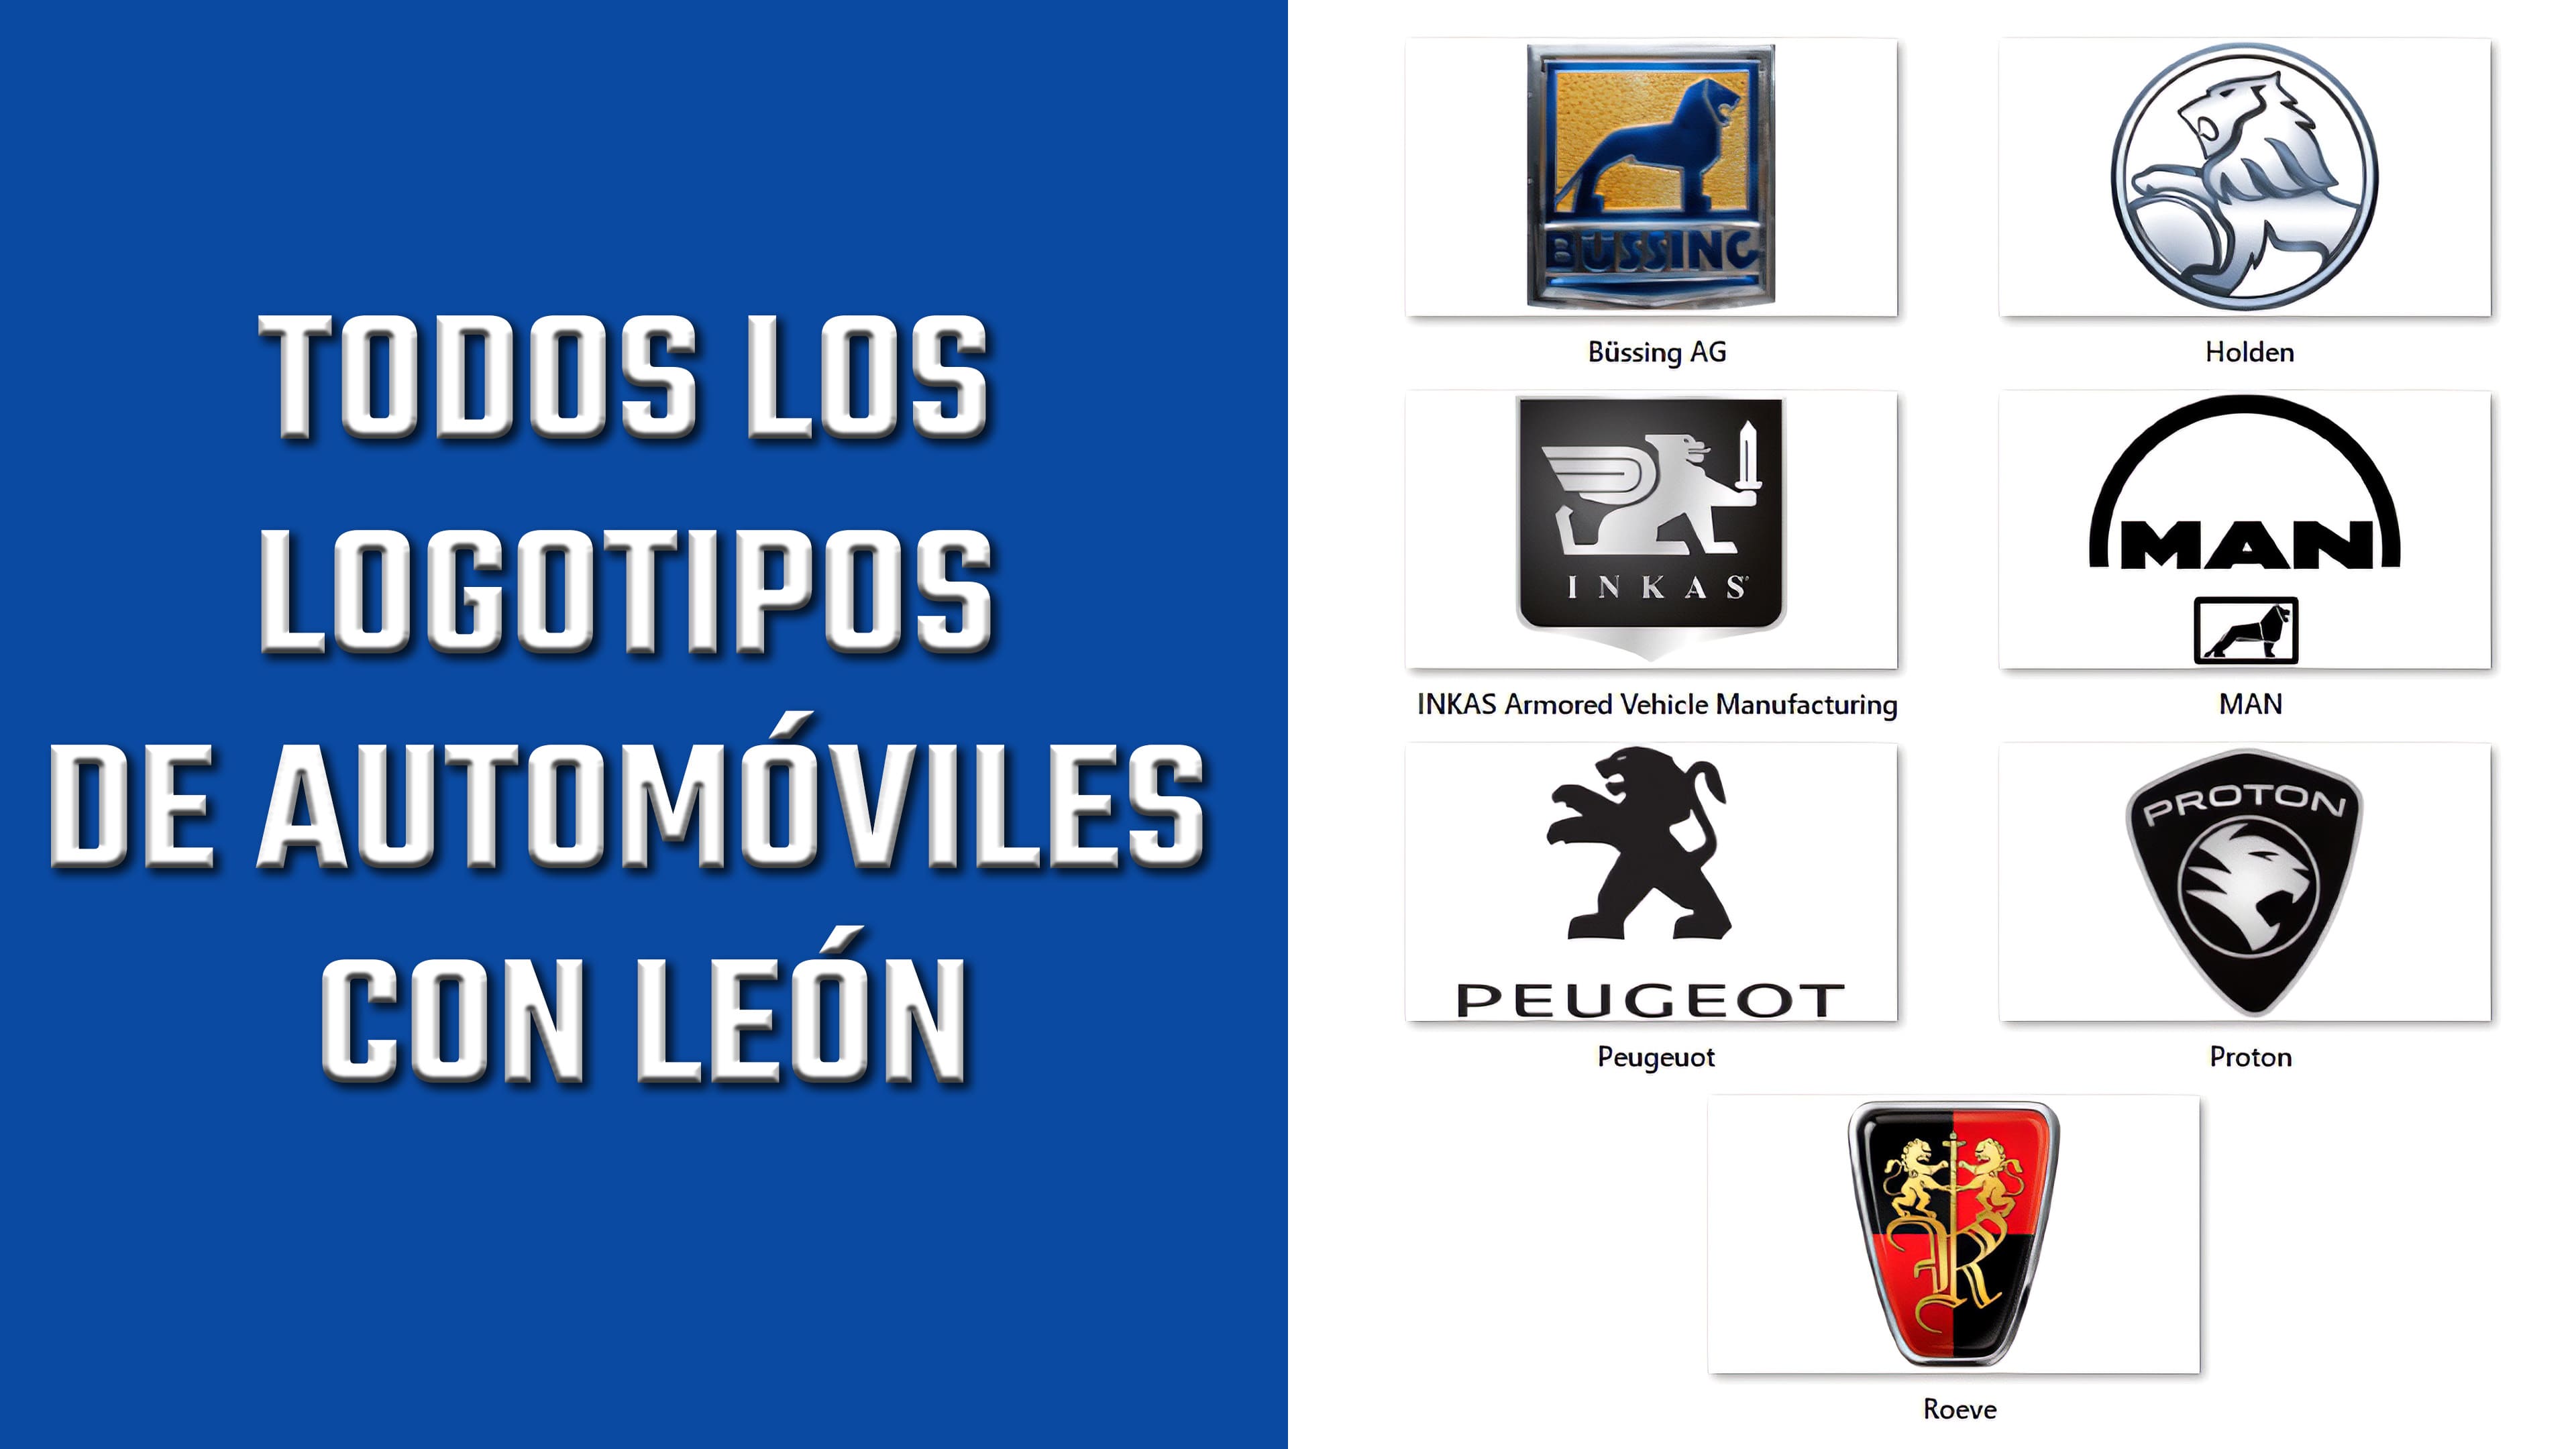 Todos los logotipos de automóviles con León